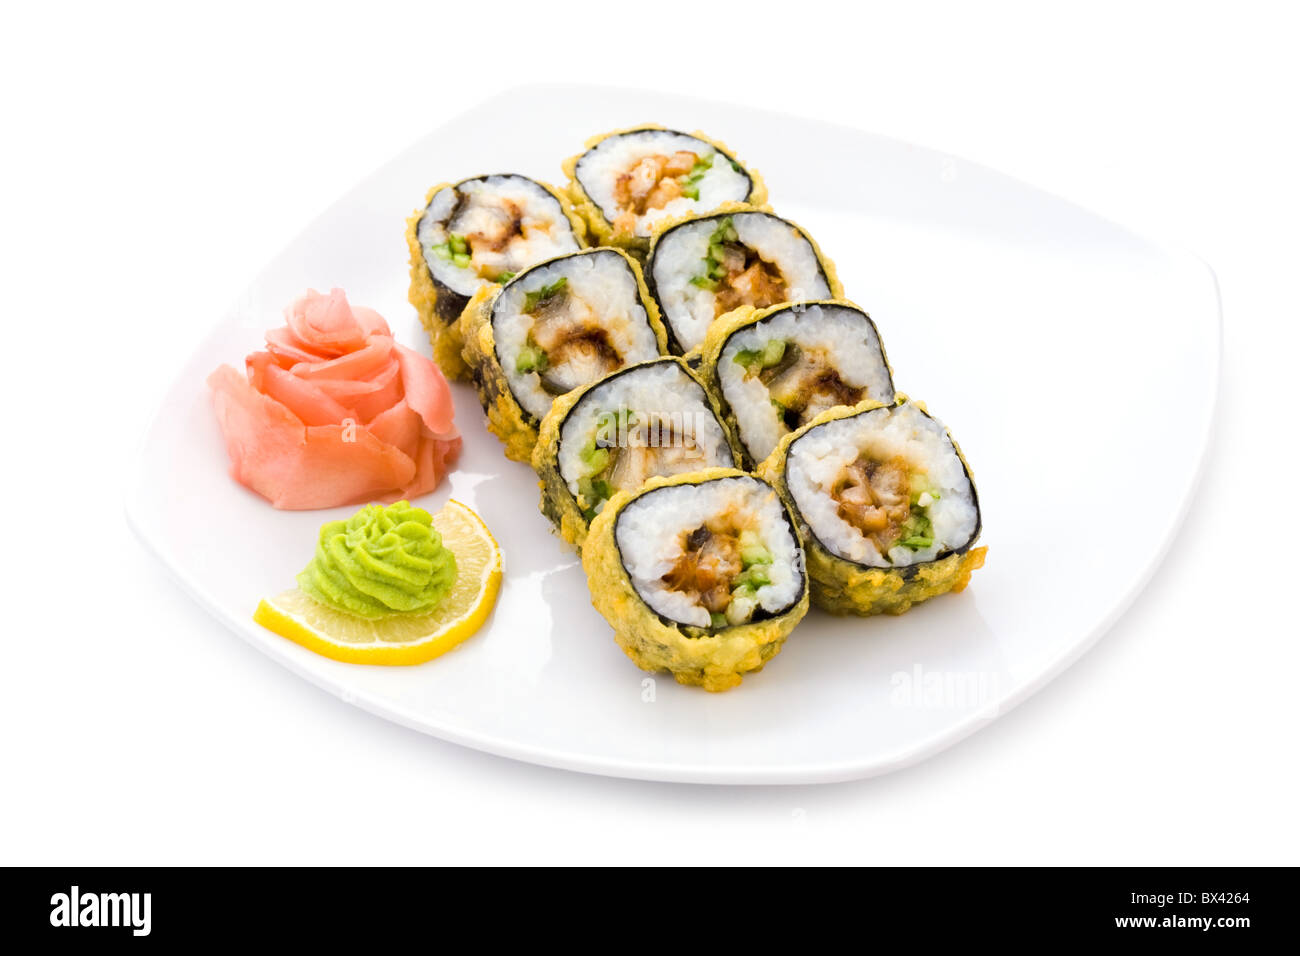 Image de sushi maki tempura avec wasabi et gingembre mariné sur la plaque Banque D'Images